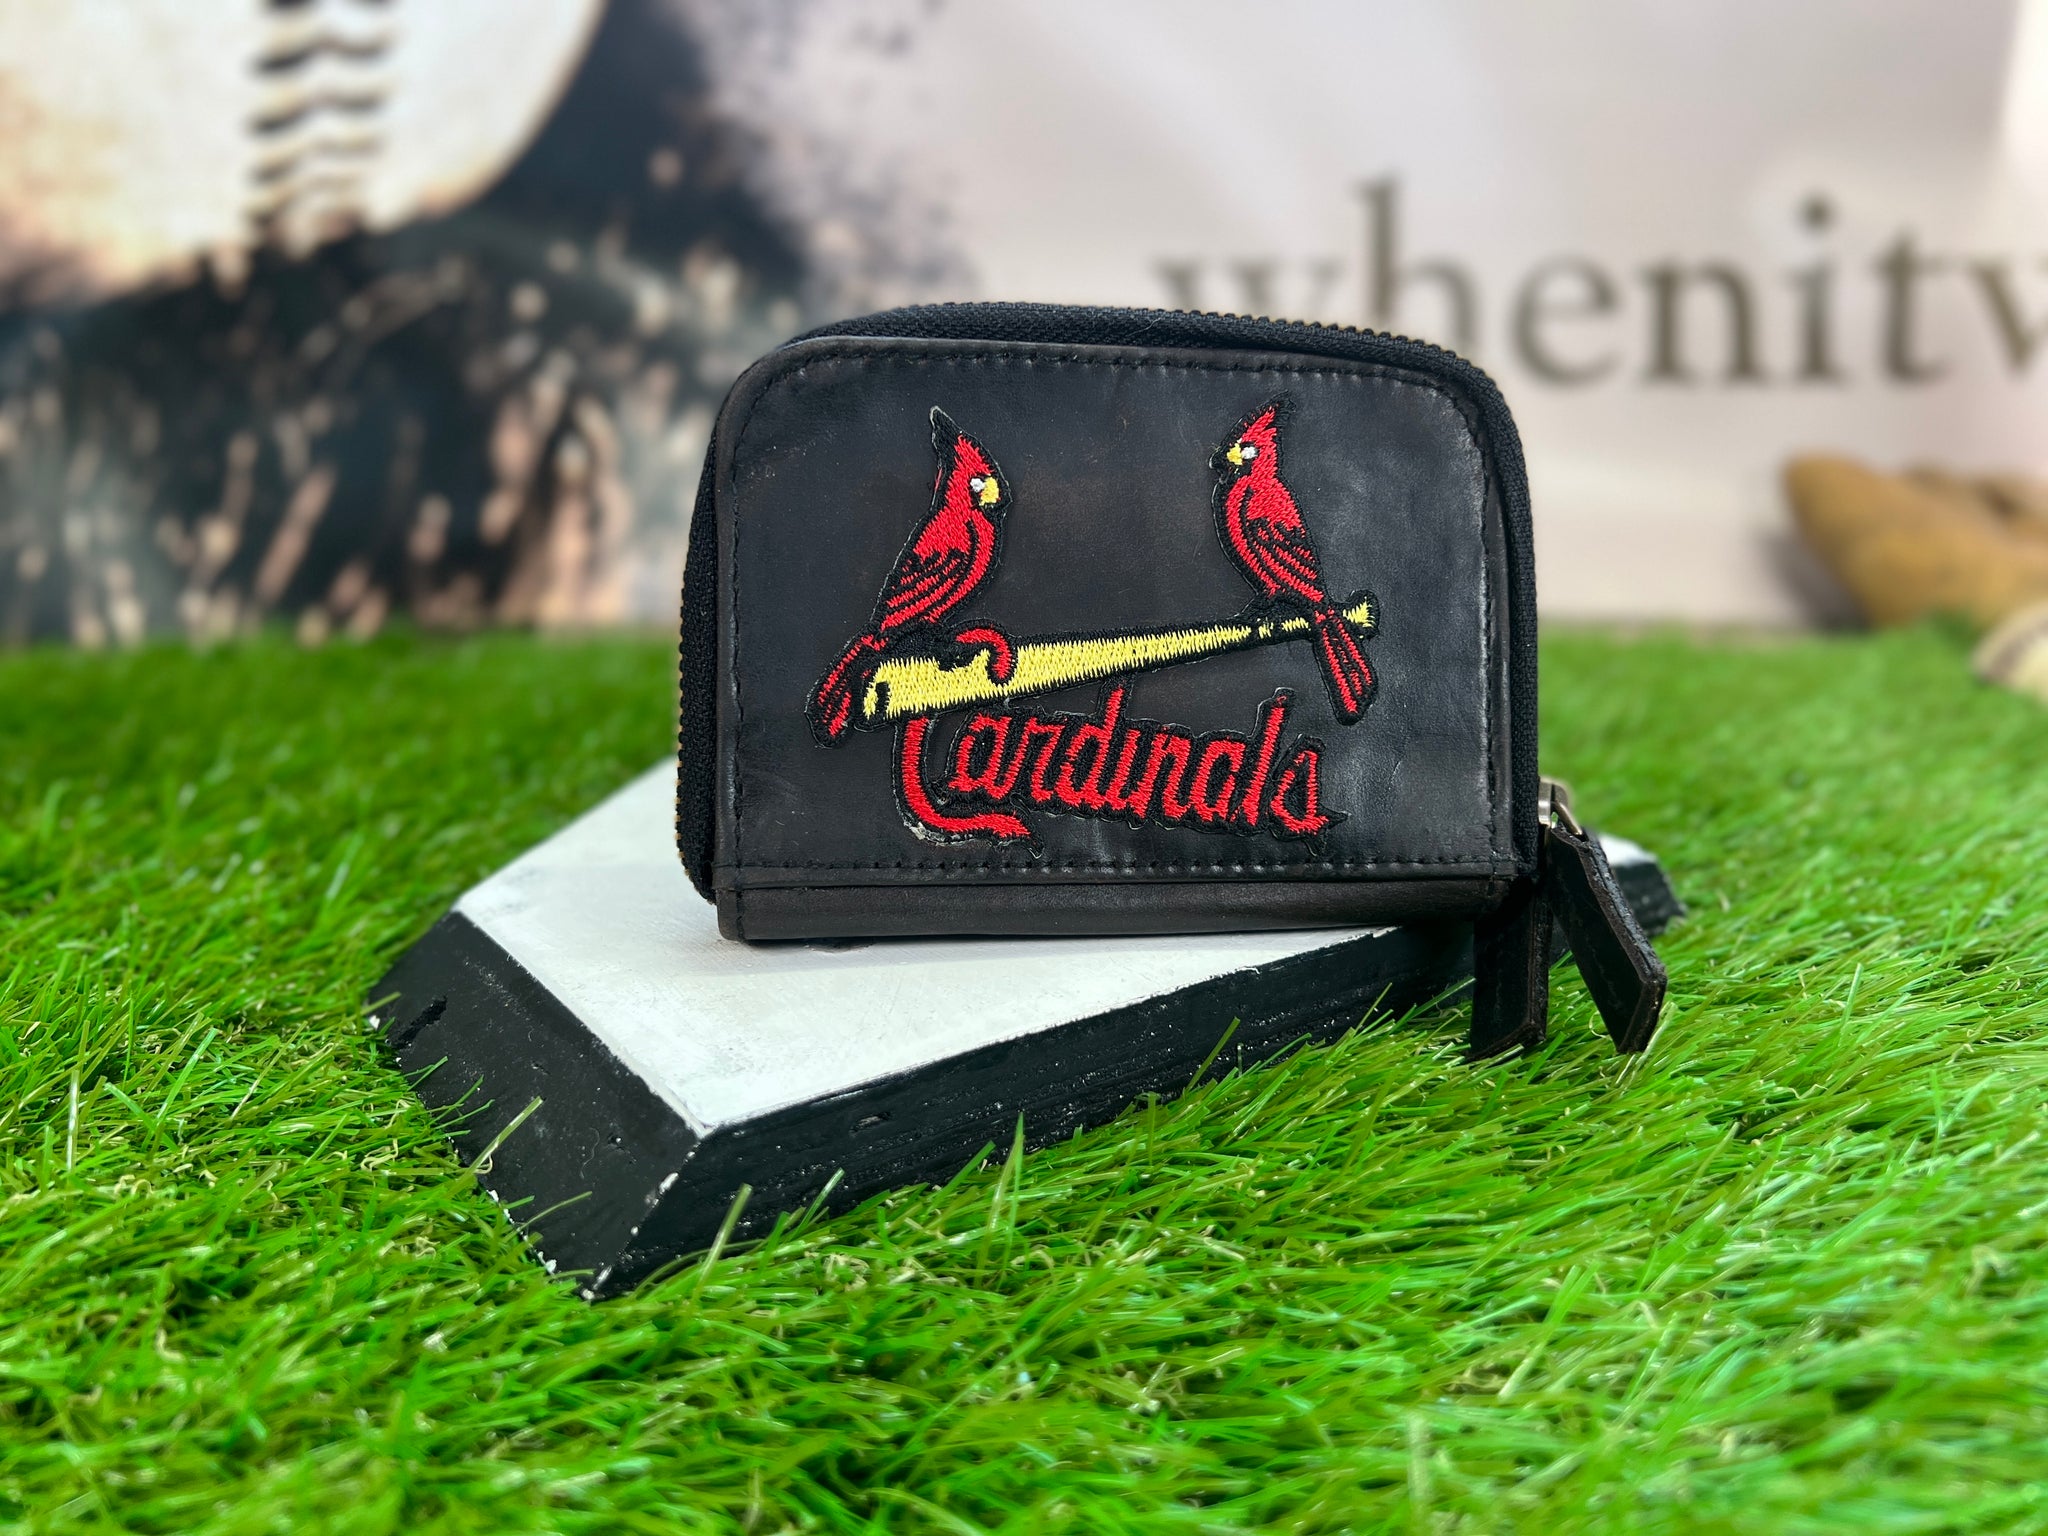 st louis cardinals purses